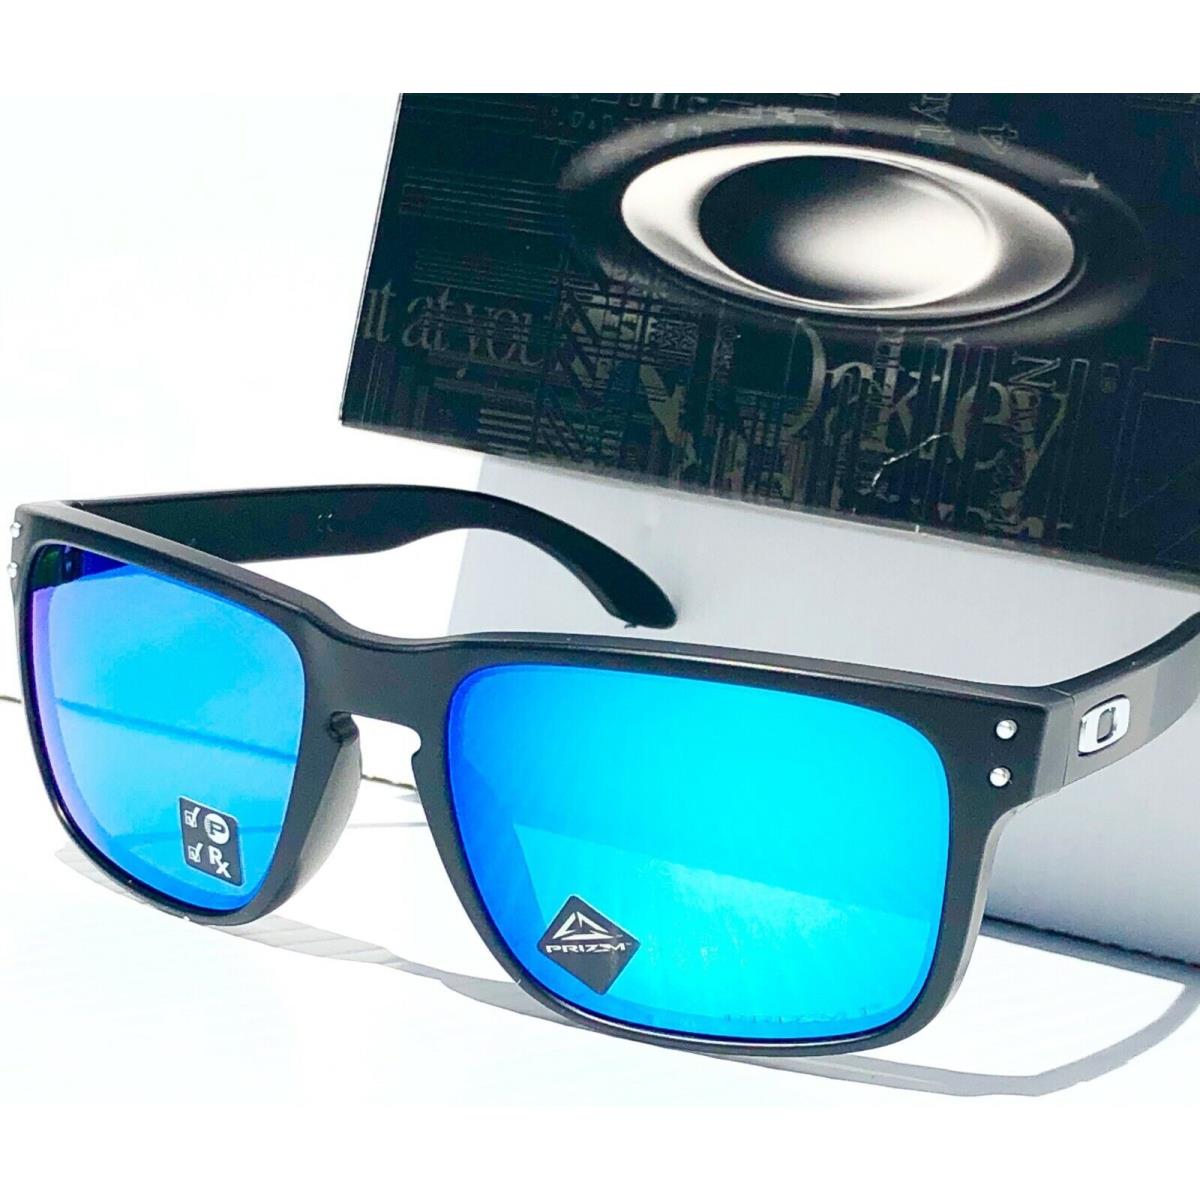 Oakley sunglasses Holbrook - Black Frame, Blue Lens 3